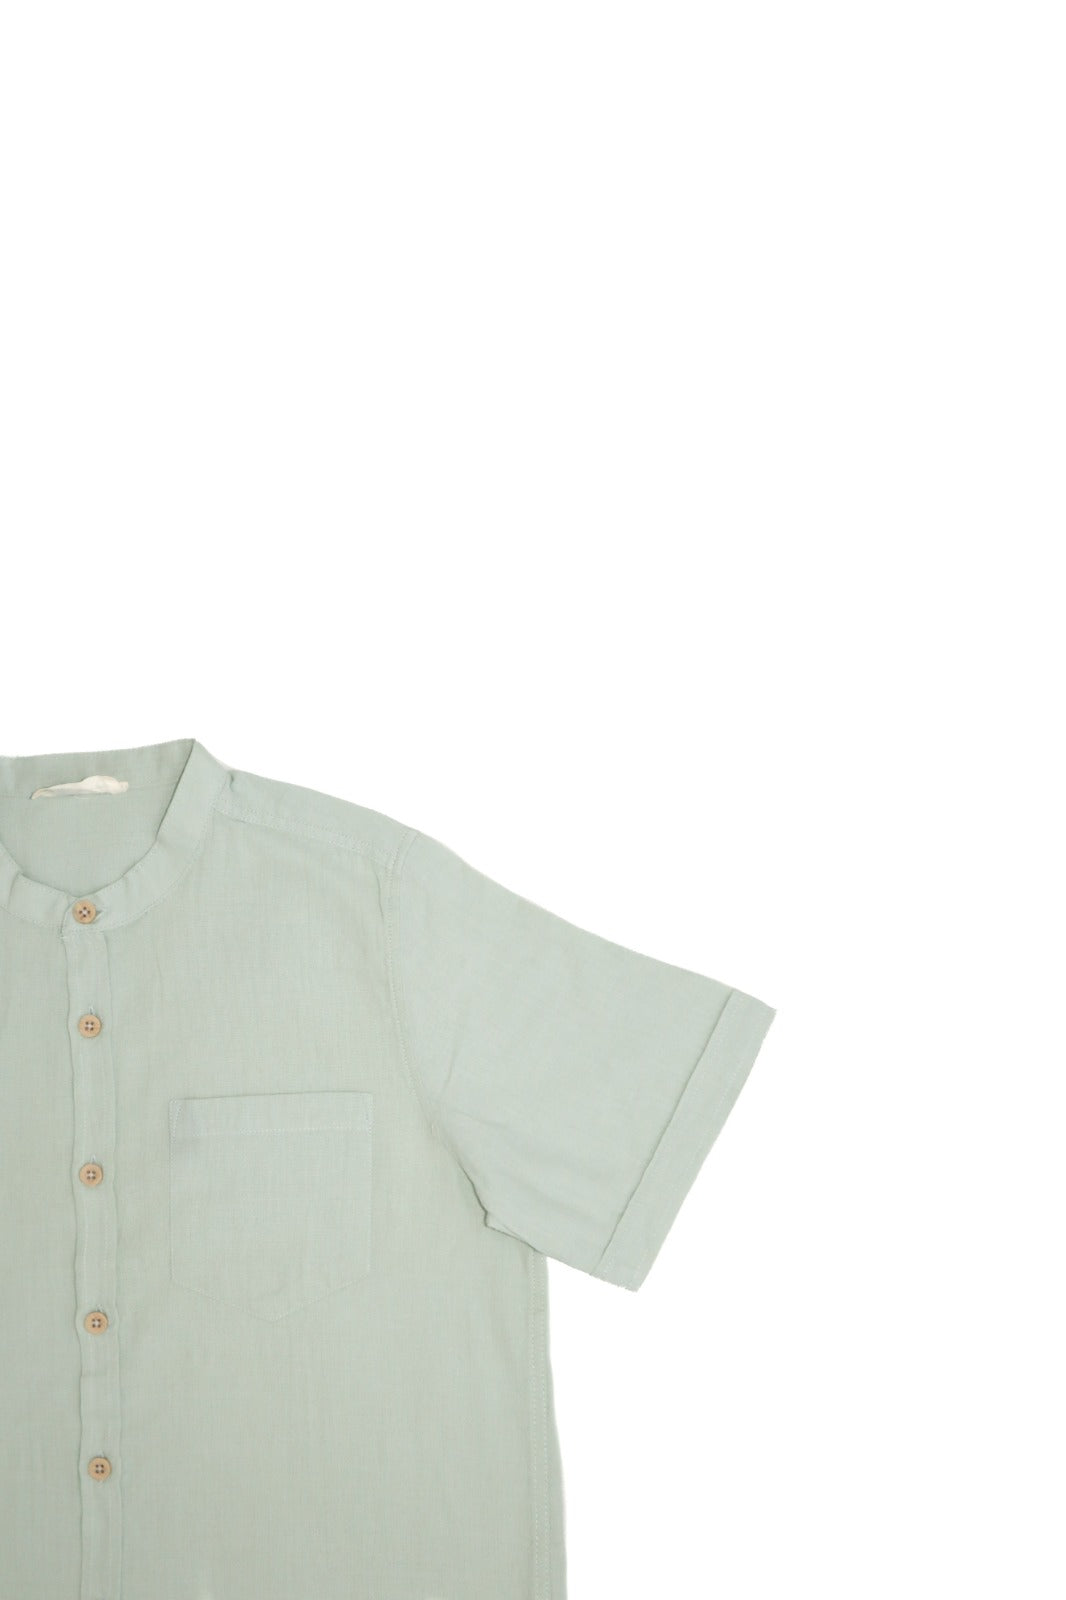 RG Mint Trendy Cut Linen Shirt